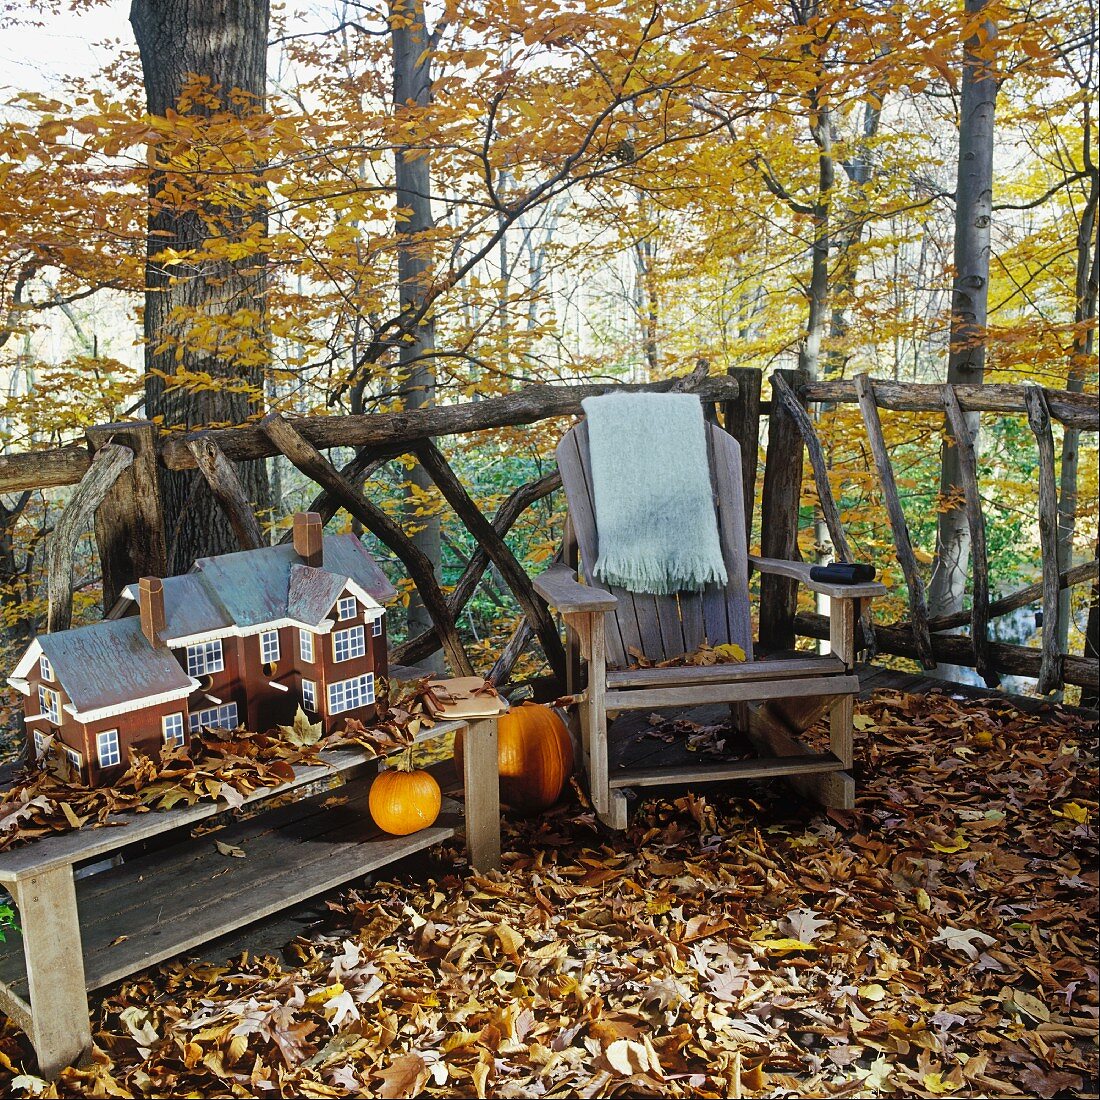 Herbstliche Terrasse mit rustikalem Lehnstuhl und einem Laubteppich; daneben ein Hausmodell auf einem Holztisch